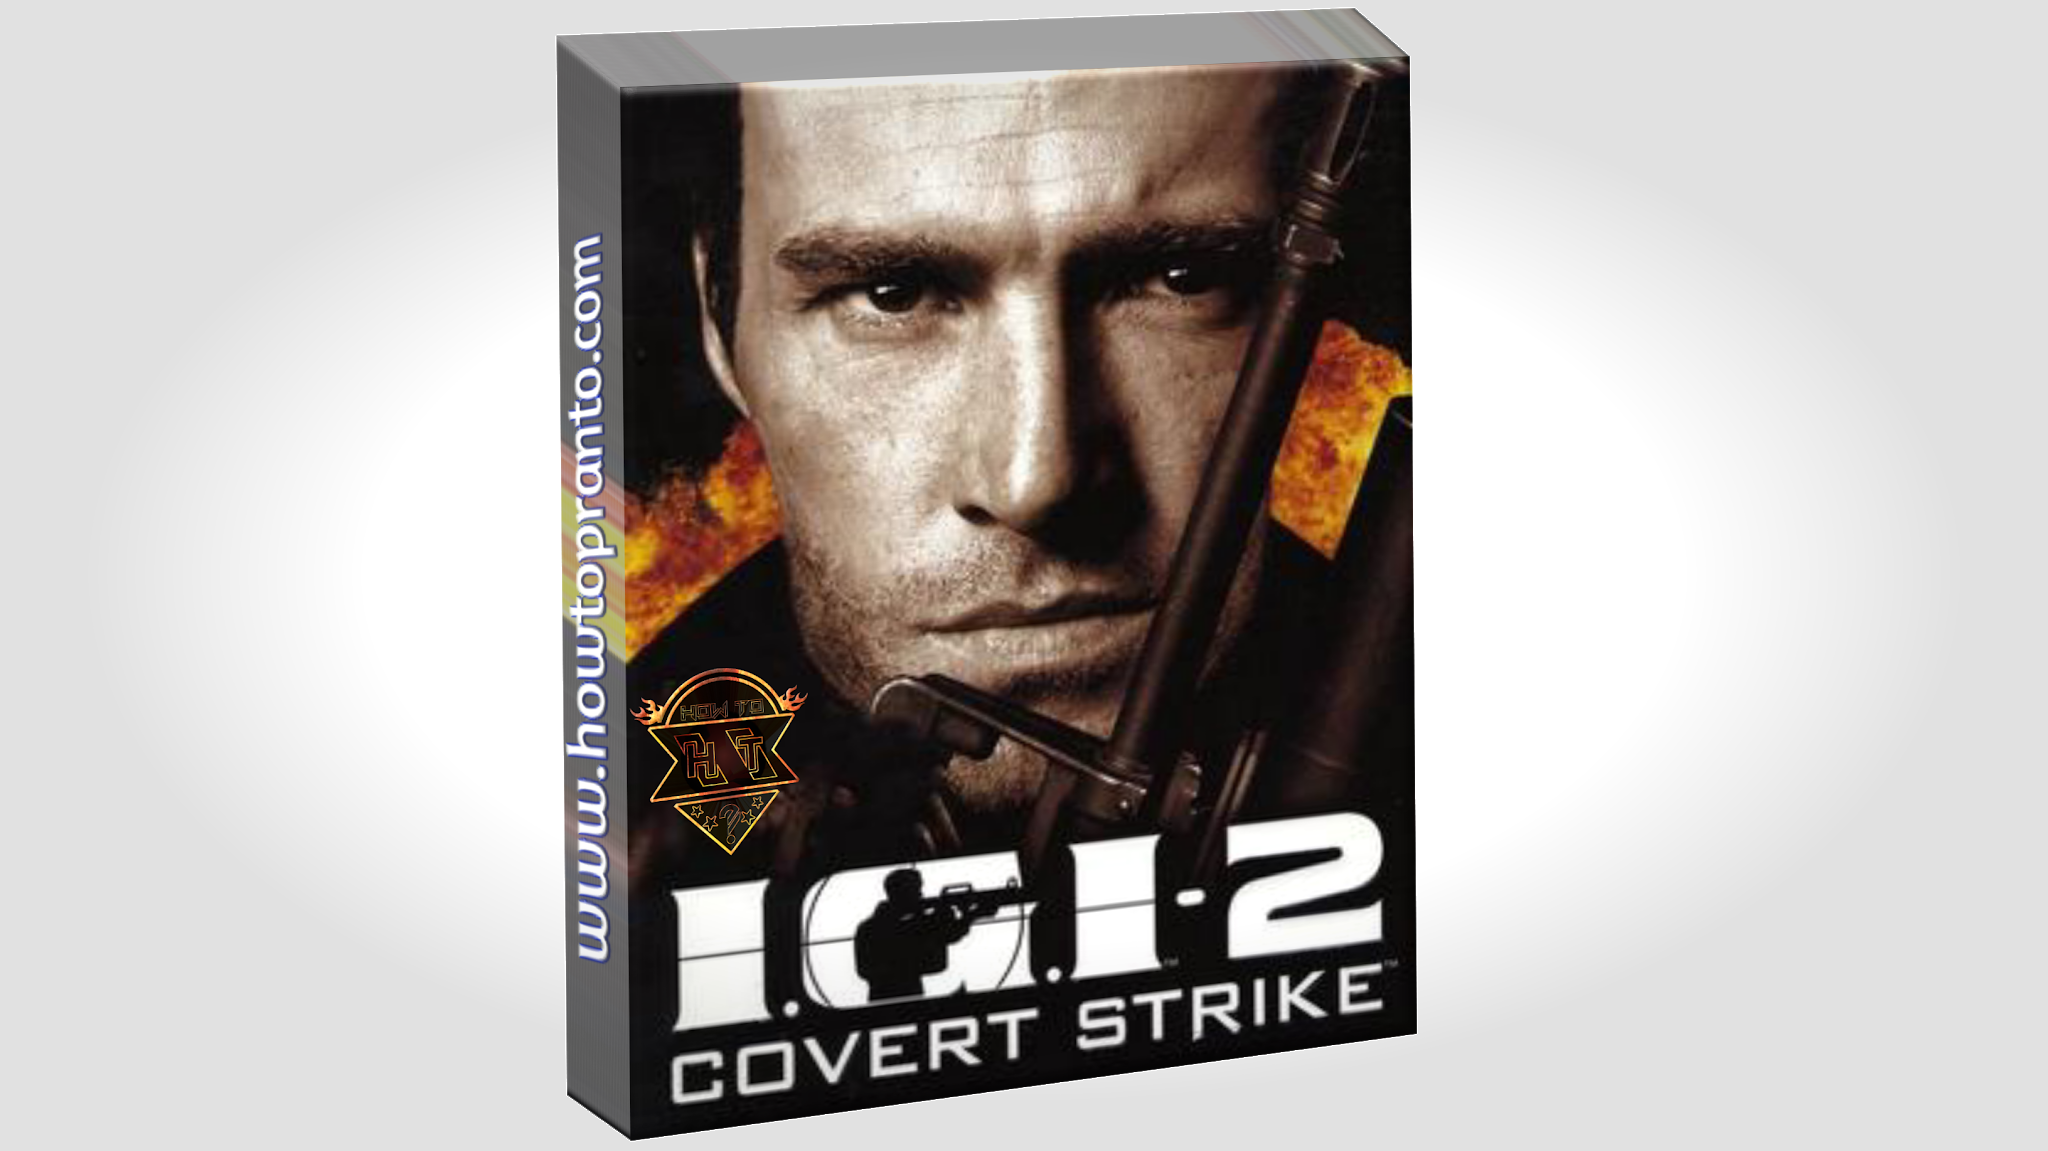 IgI-2 Covert Strike - HowTopranto | IgI-2 Covert Strike  logo